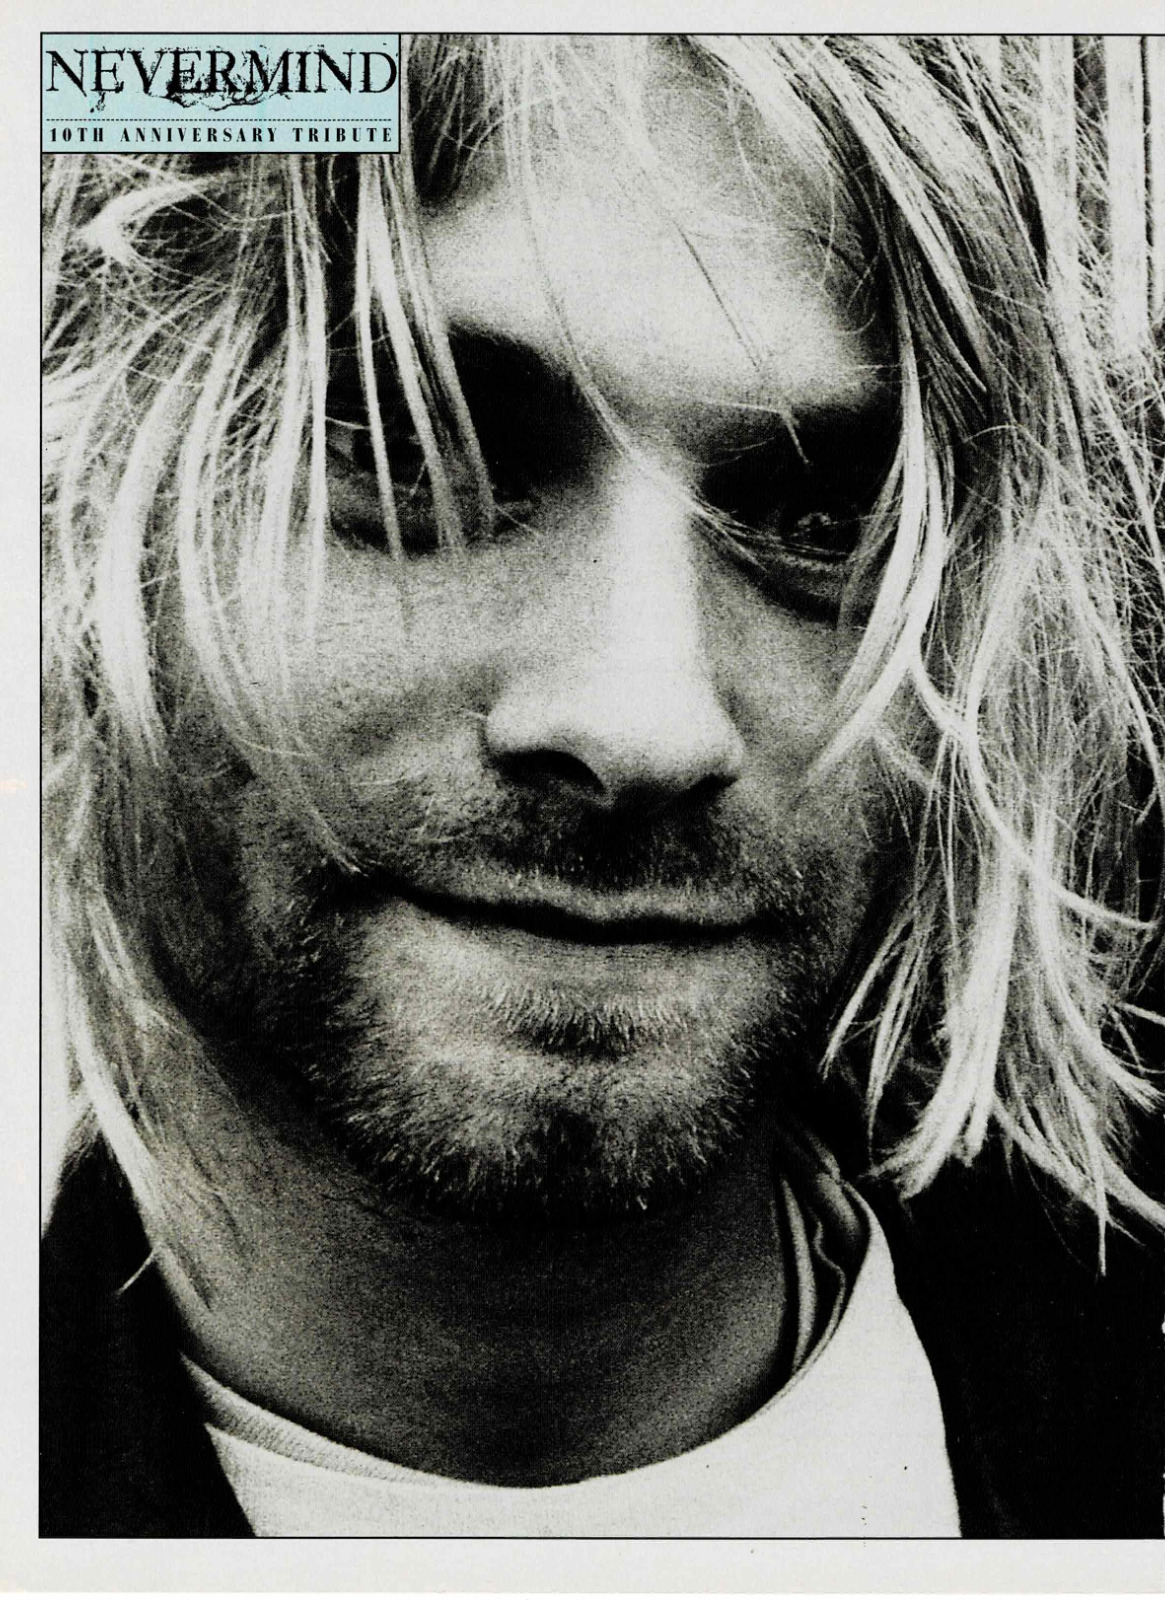 Kurt Cobain of Nirvana - Nevermind Tribute - Music Print Ad Photo